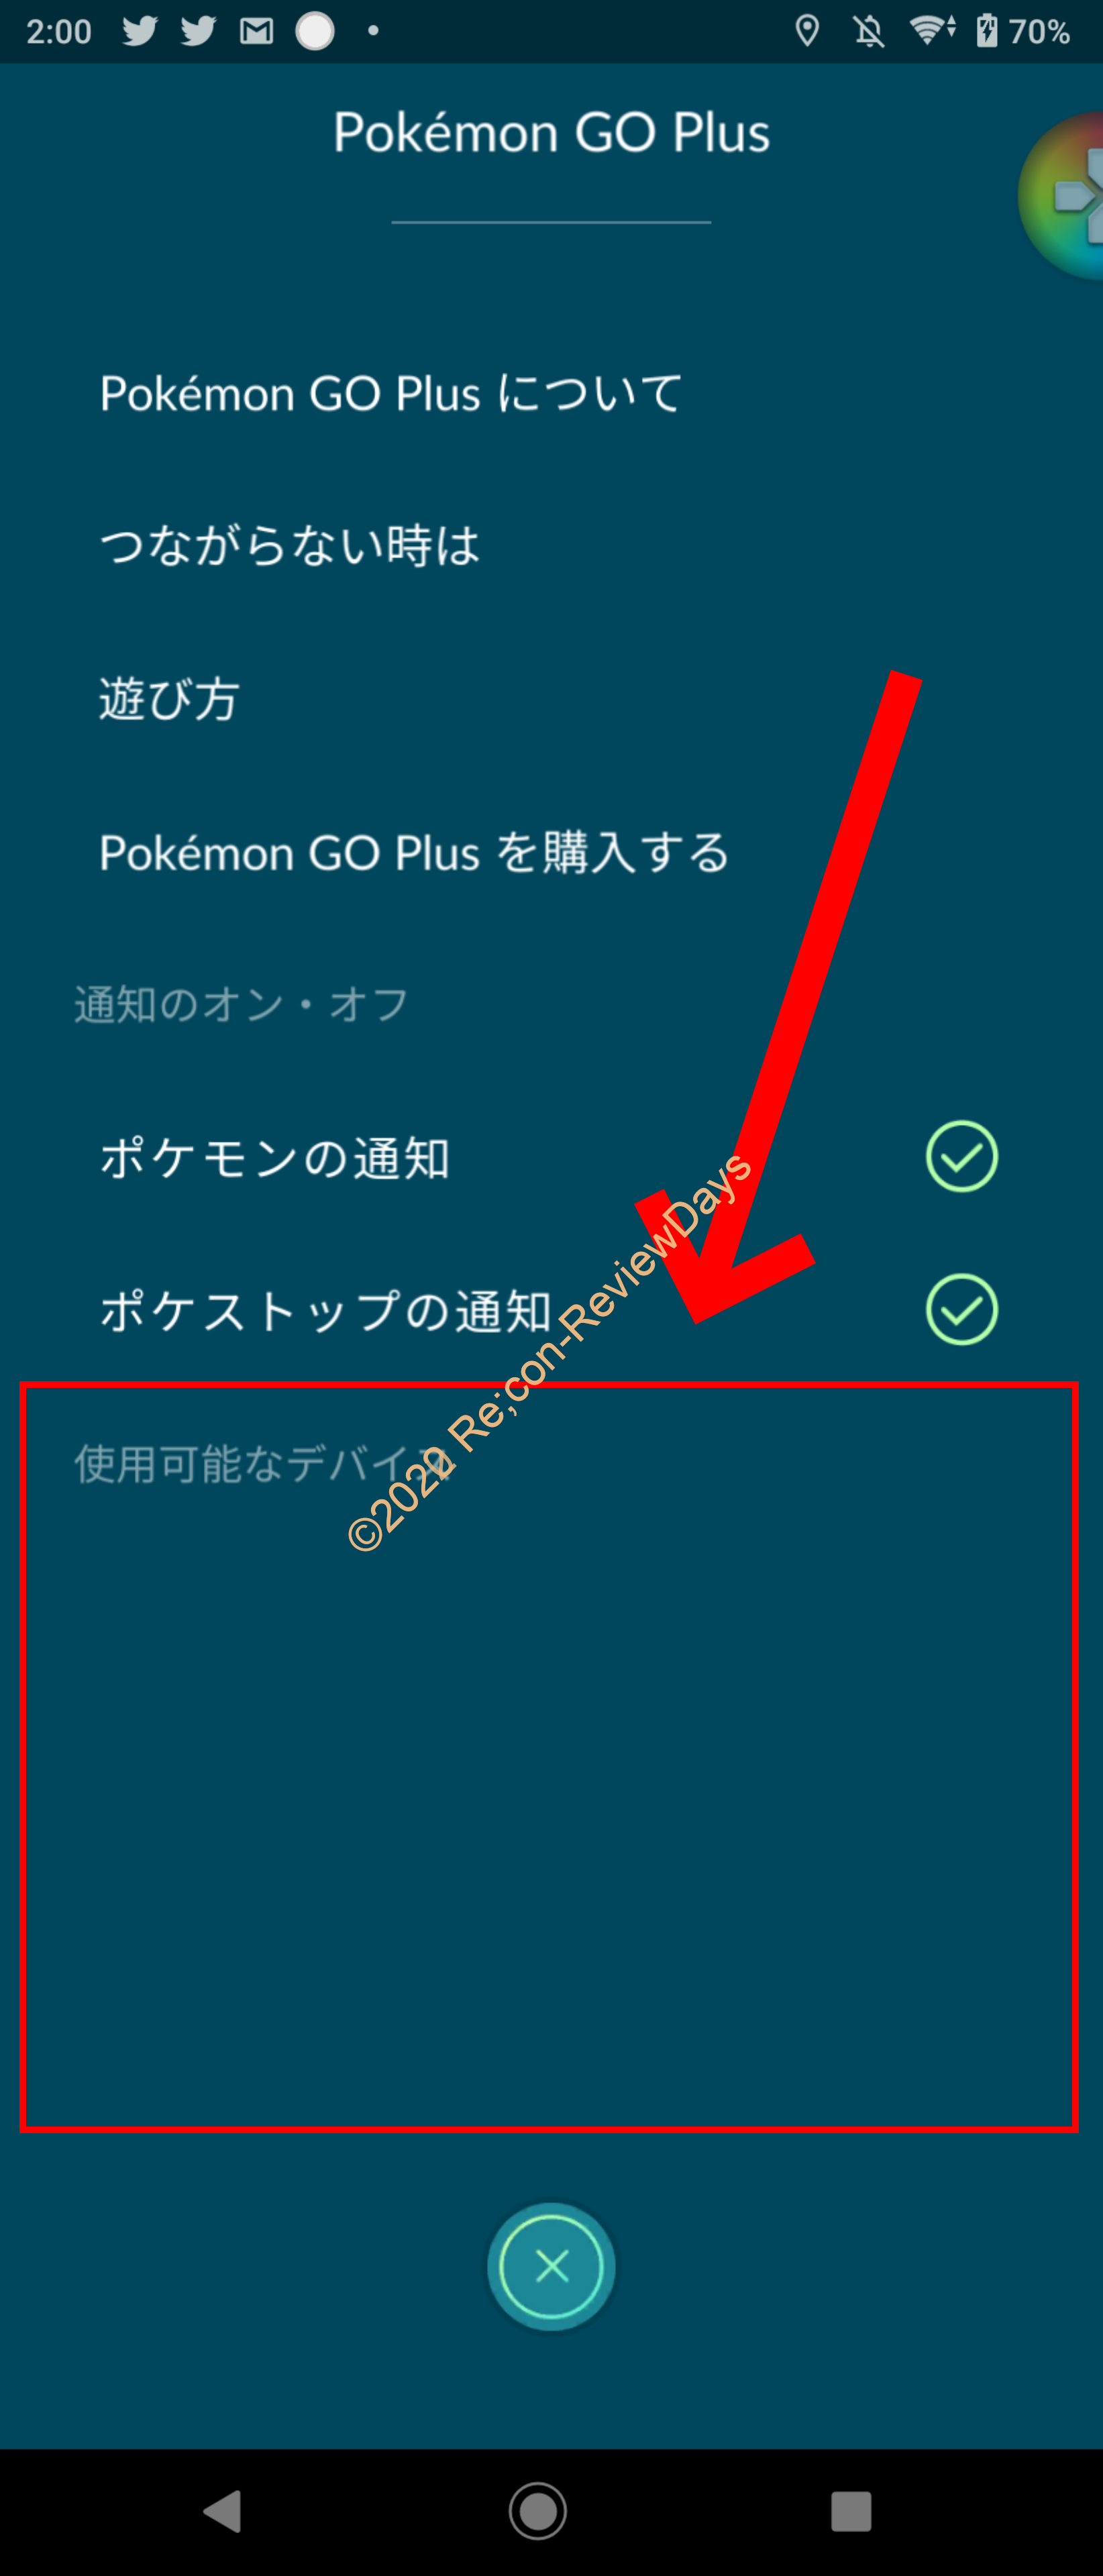 Android版Pokemon Go Ver0.173-GにアップデートするとGo Plus、モンスターボールPlus等が正常に繋がらなくなる不具合が発生中 #PokemonGo #ポケモンゴー